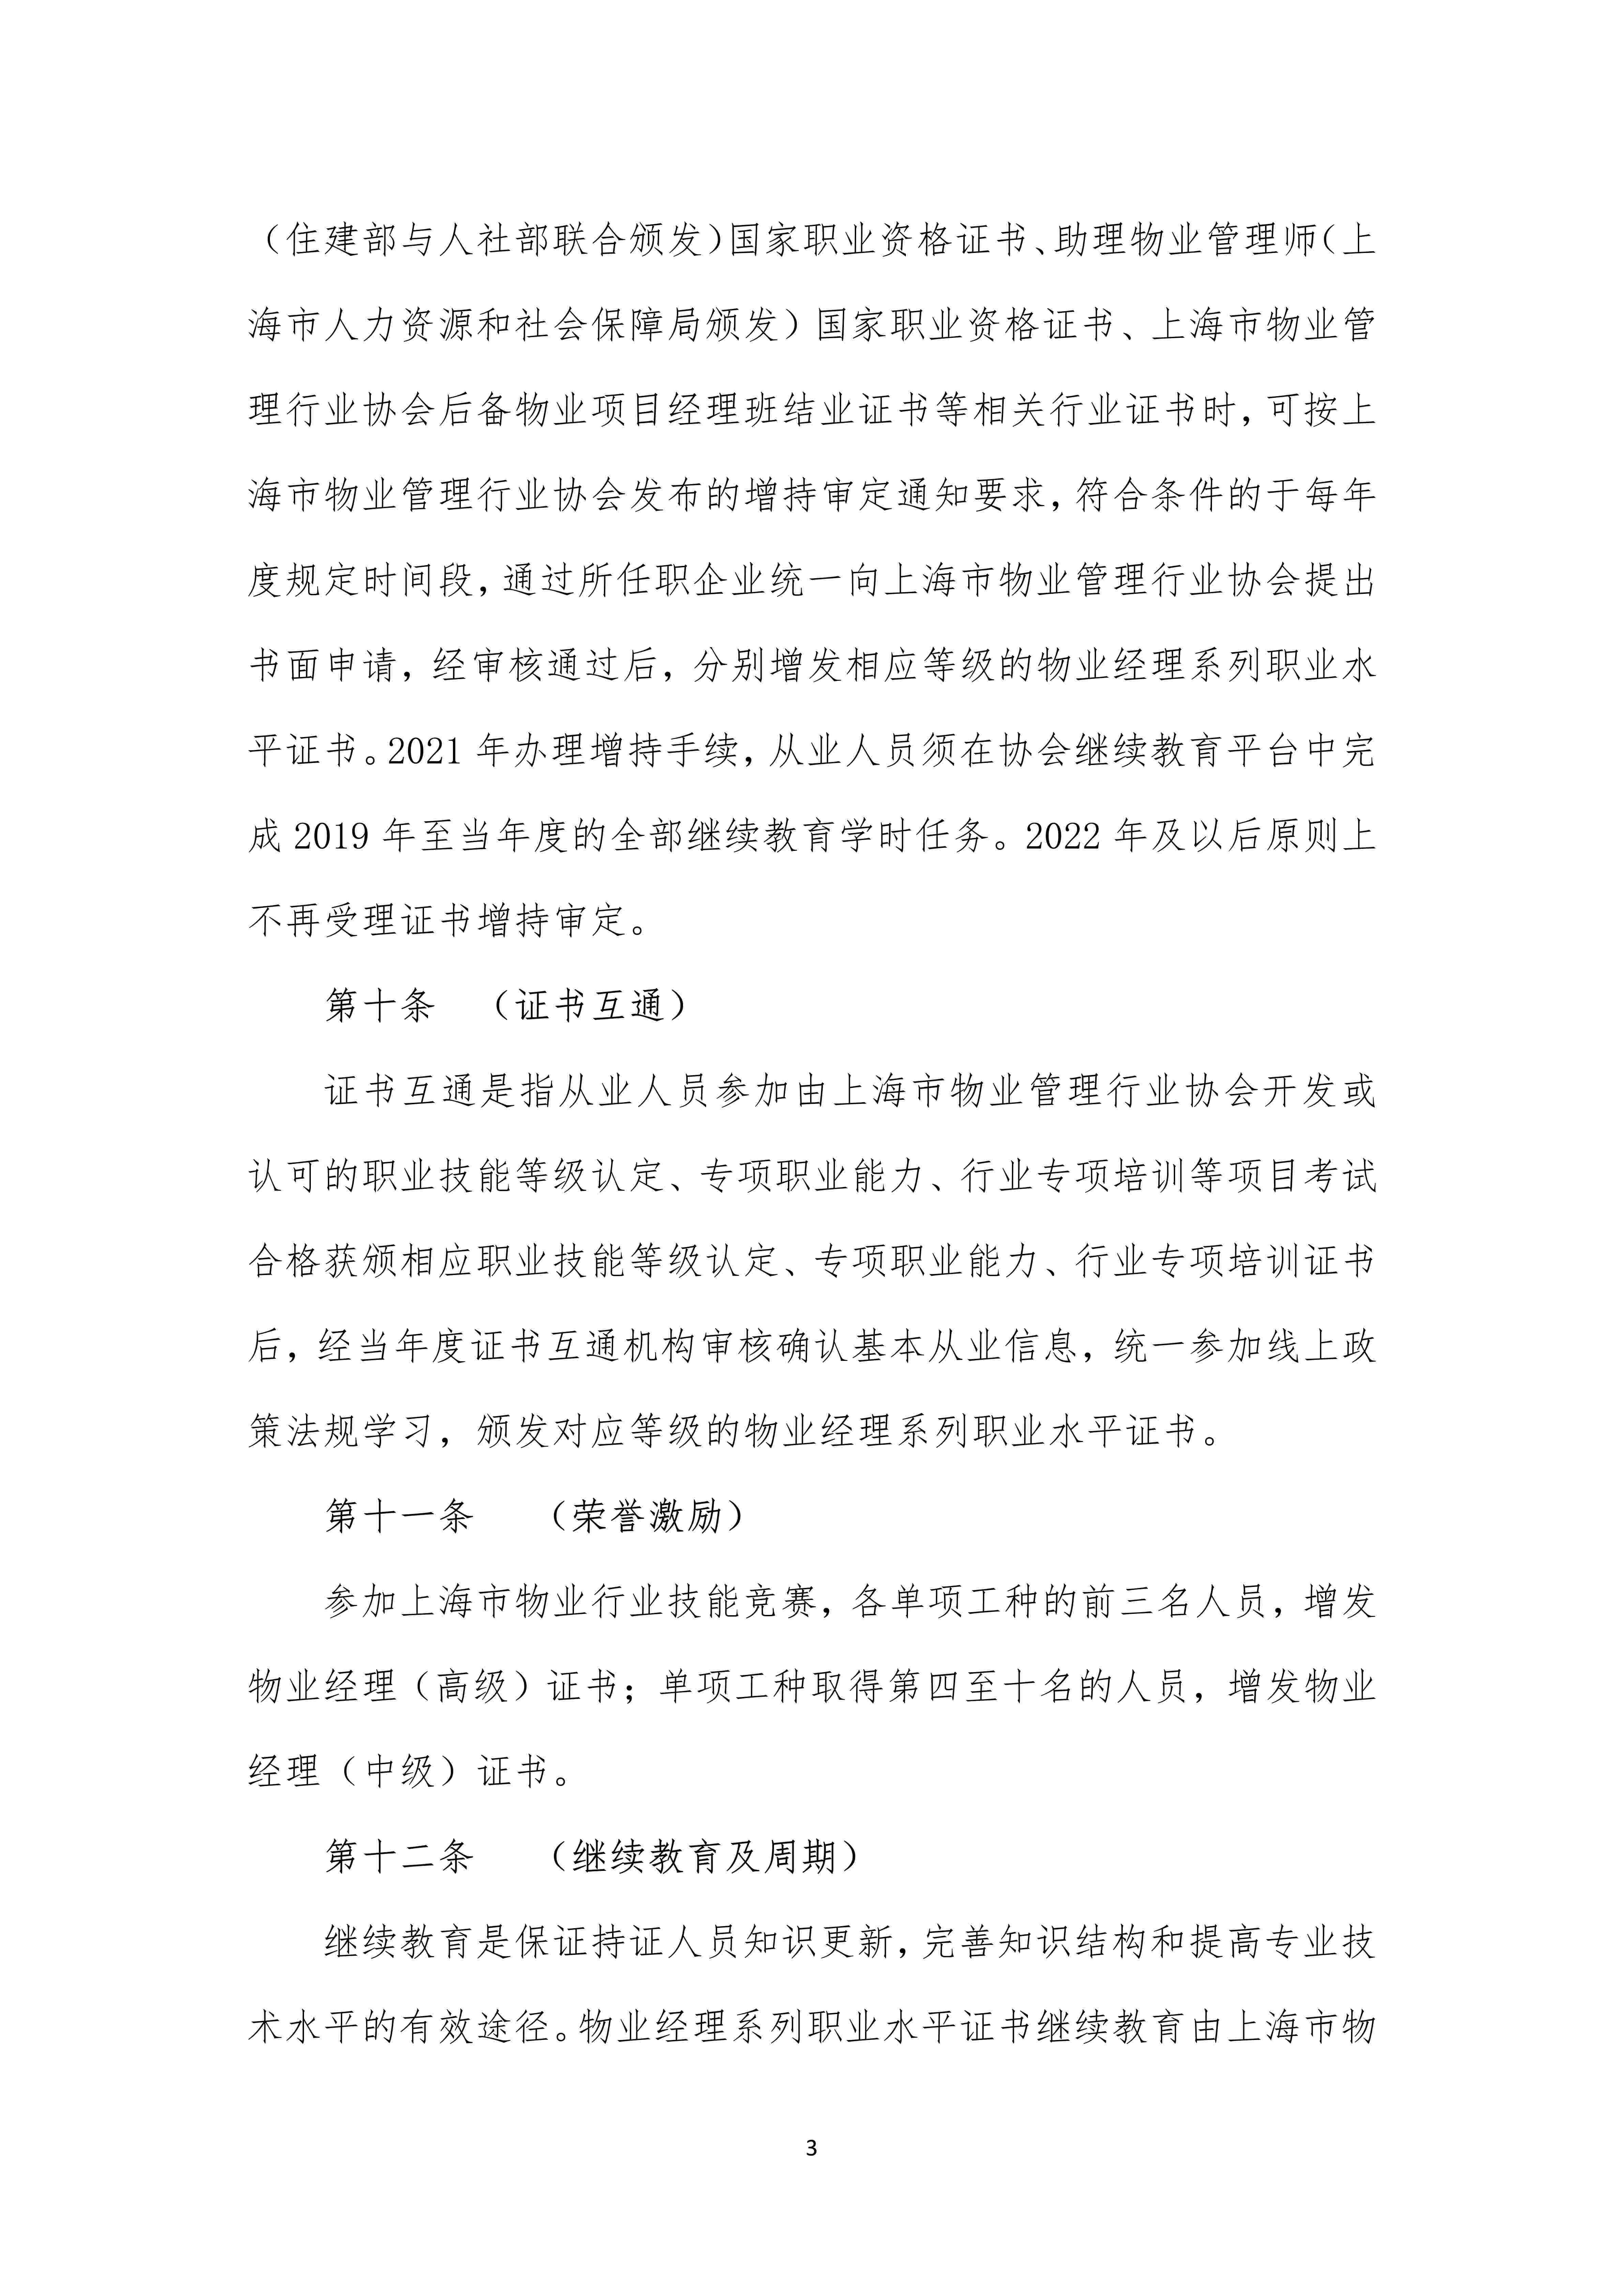 上海市物业管理行业物业经理系列职业水平证书管理办法（定稿）_3.jpg-2022-07-06-09-56-34-051.jpg